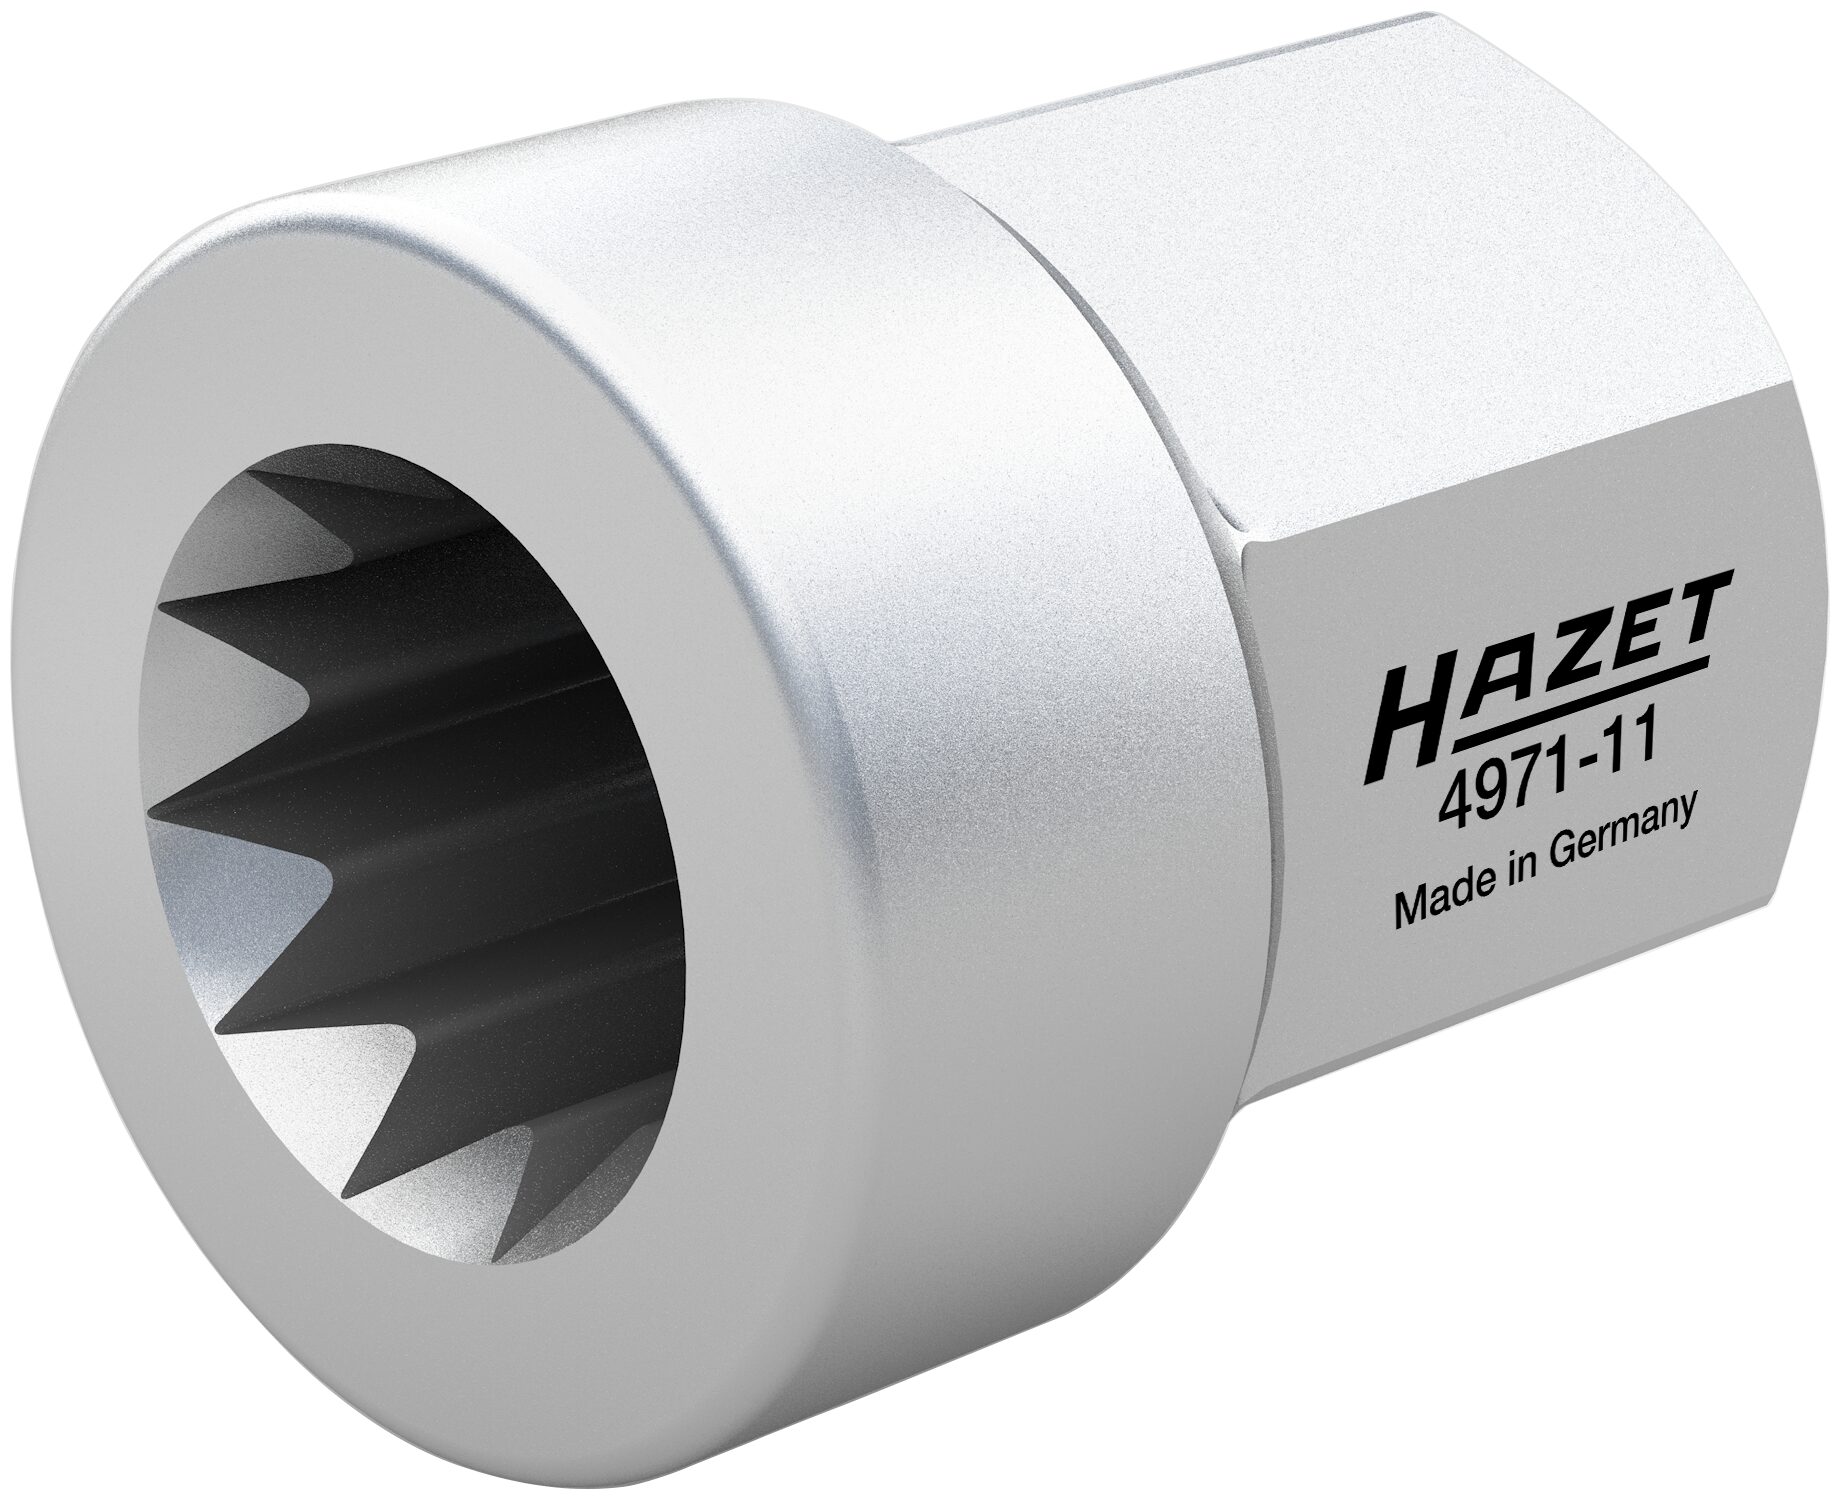 HAZET Bremssattel-Rücksteller KNORR Bremse 4971-11 · Außen-Sechskant 12 mm · 15 mm